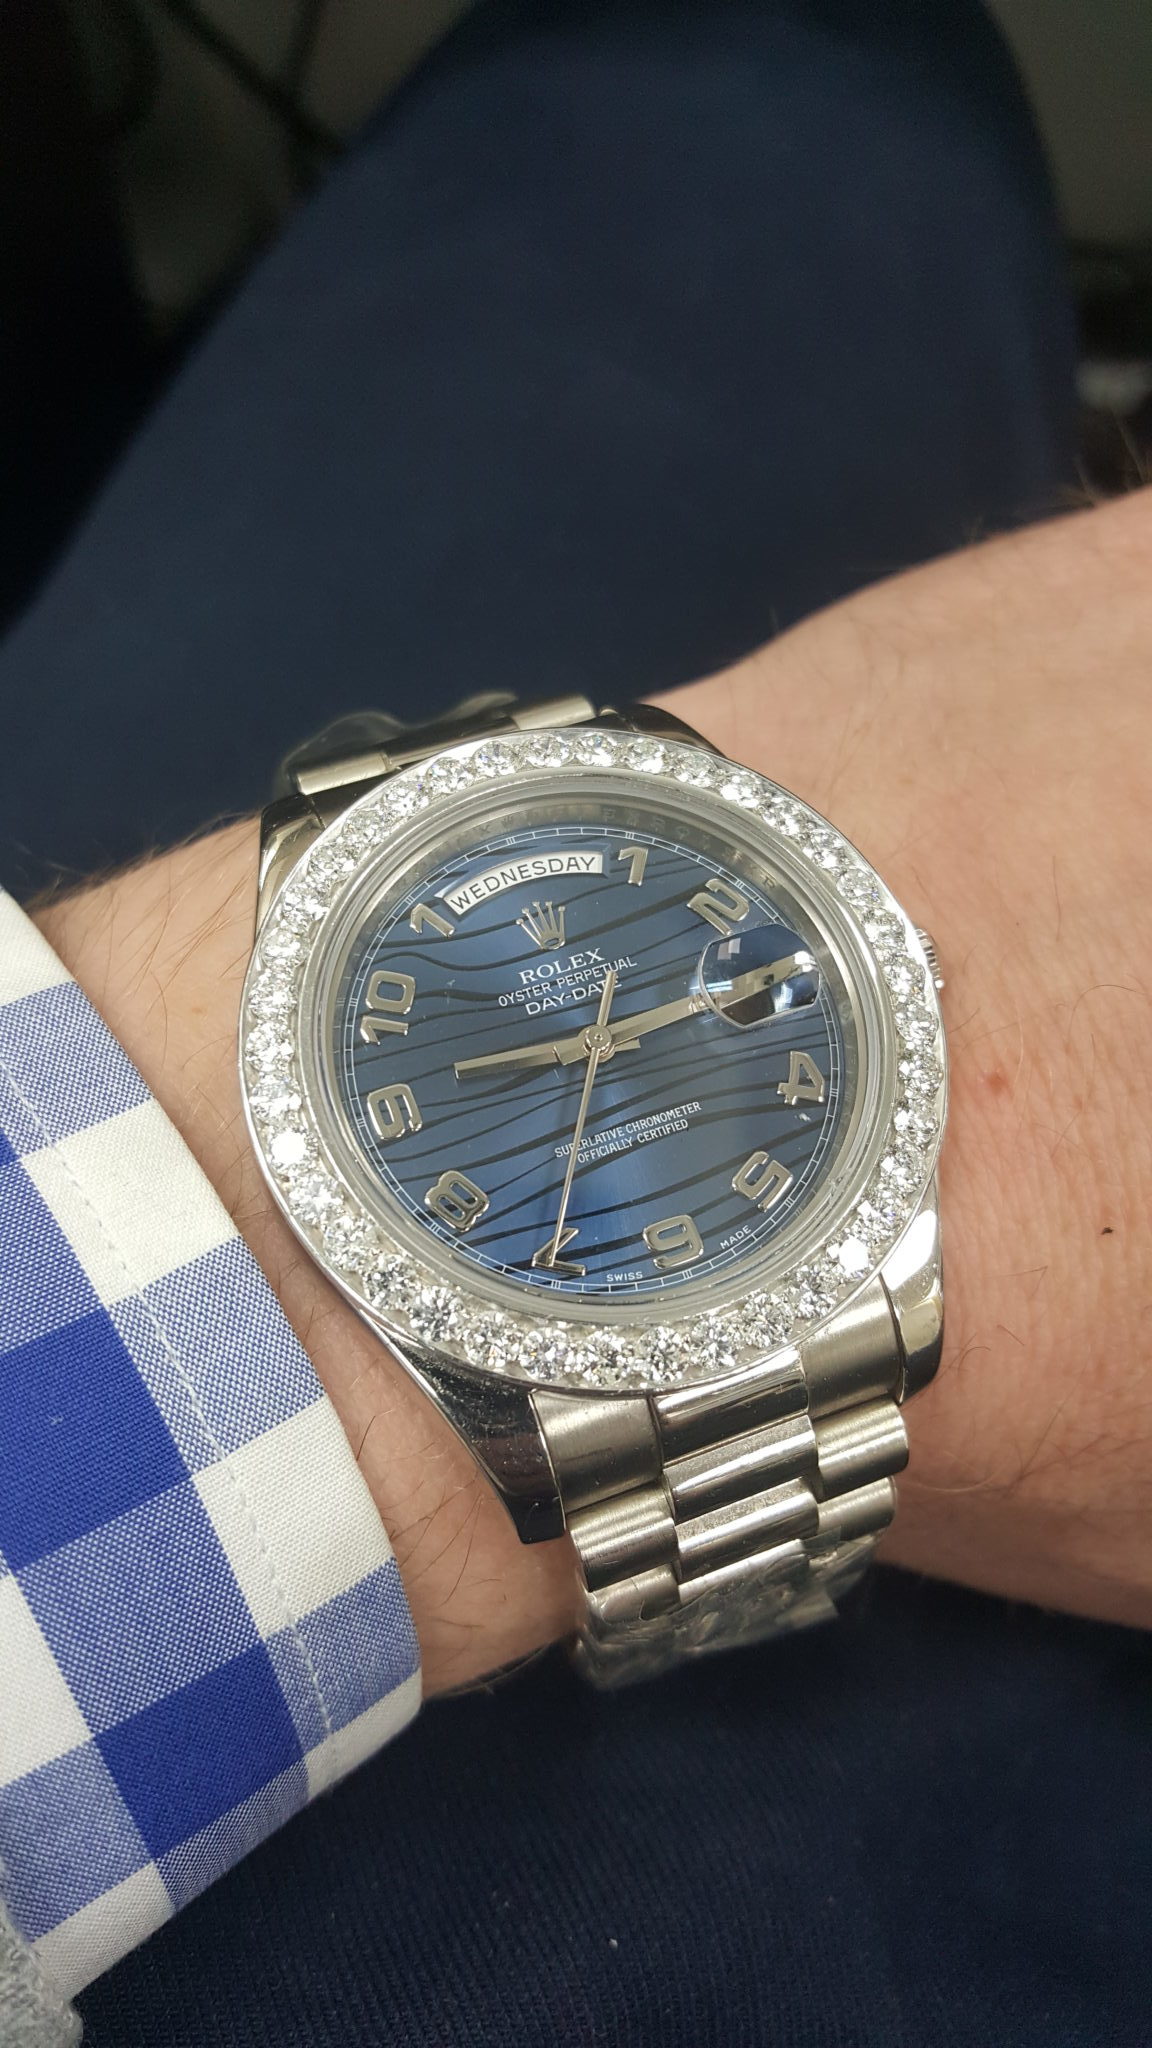 Rolex Day date with diamond bezel